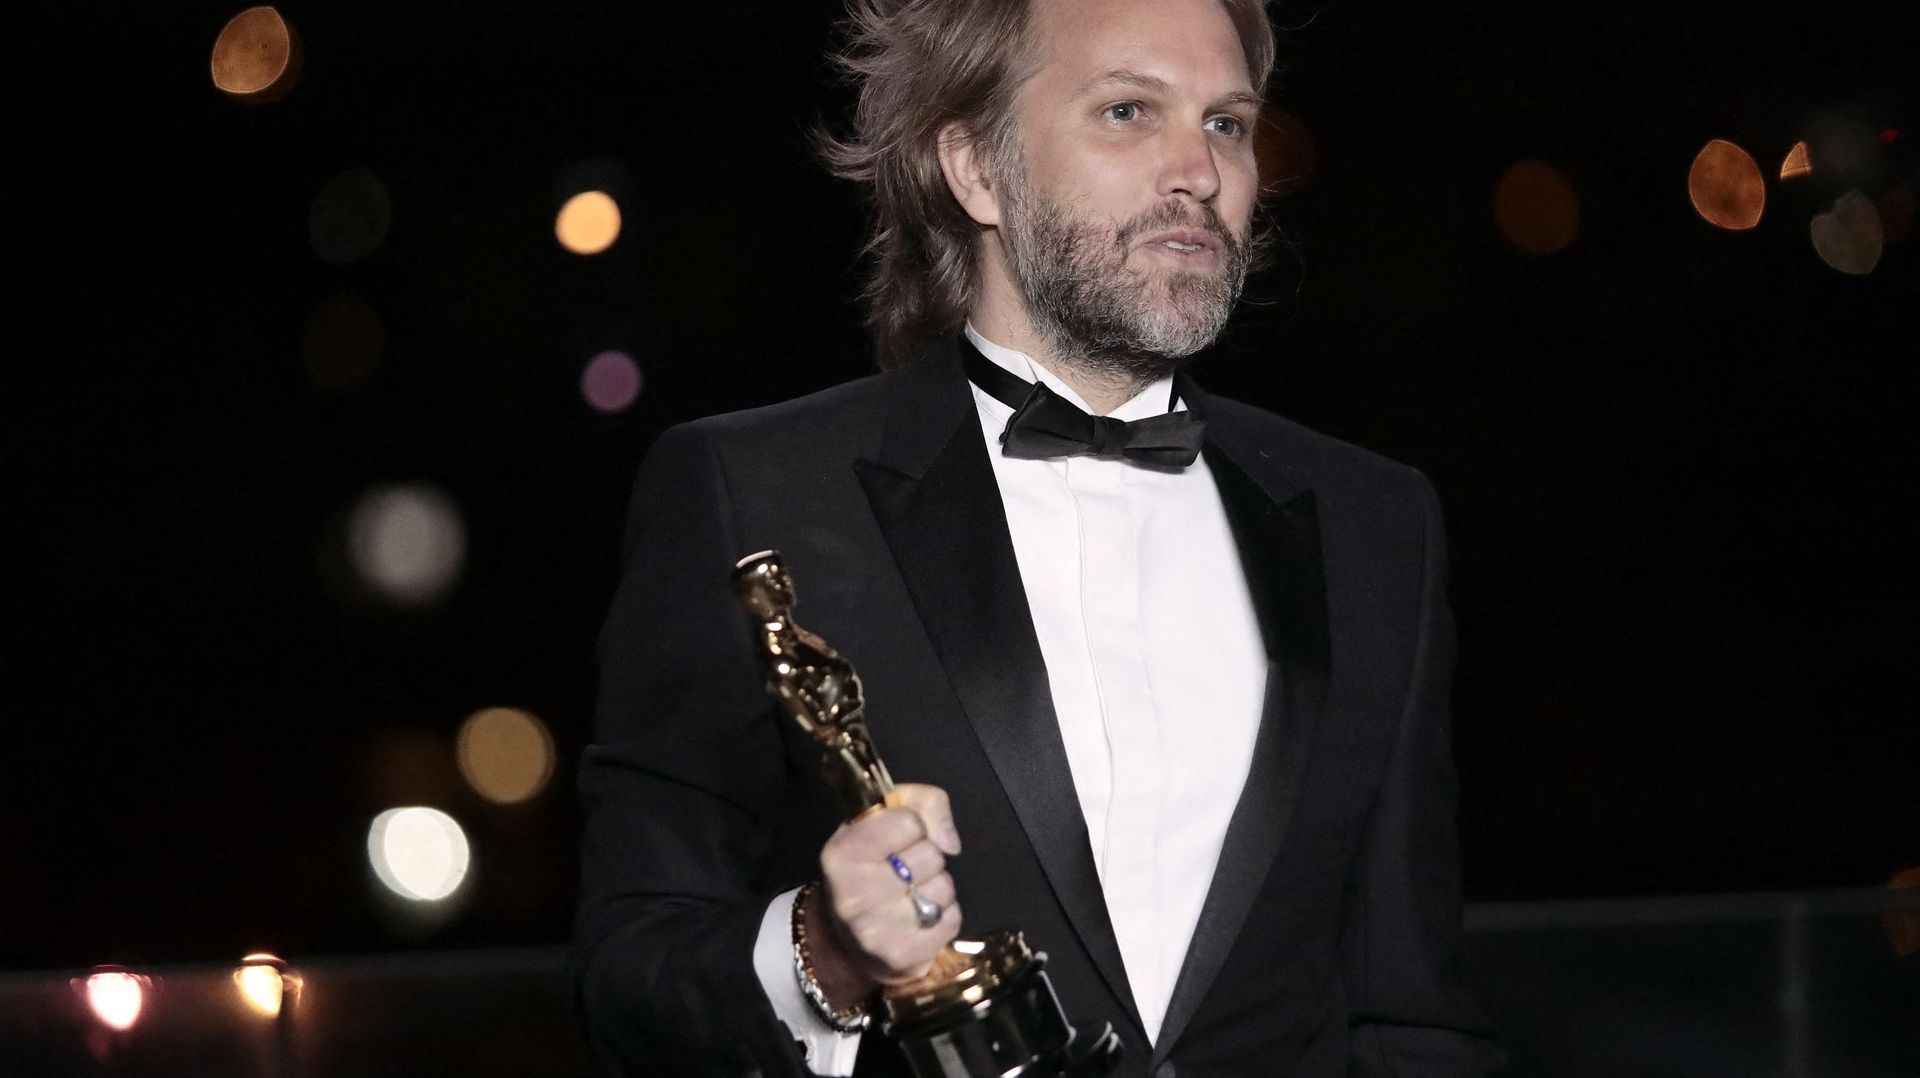 Florian ZellerIl a reçu son prix à Paris, où les Oscars avaient prévu un site dédié pour les artistes ne pouvant se rendre à Los Angeles à cause de la pandémie.